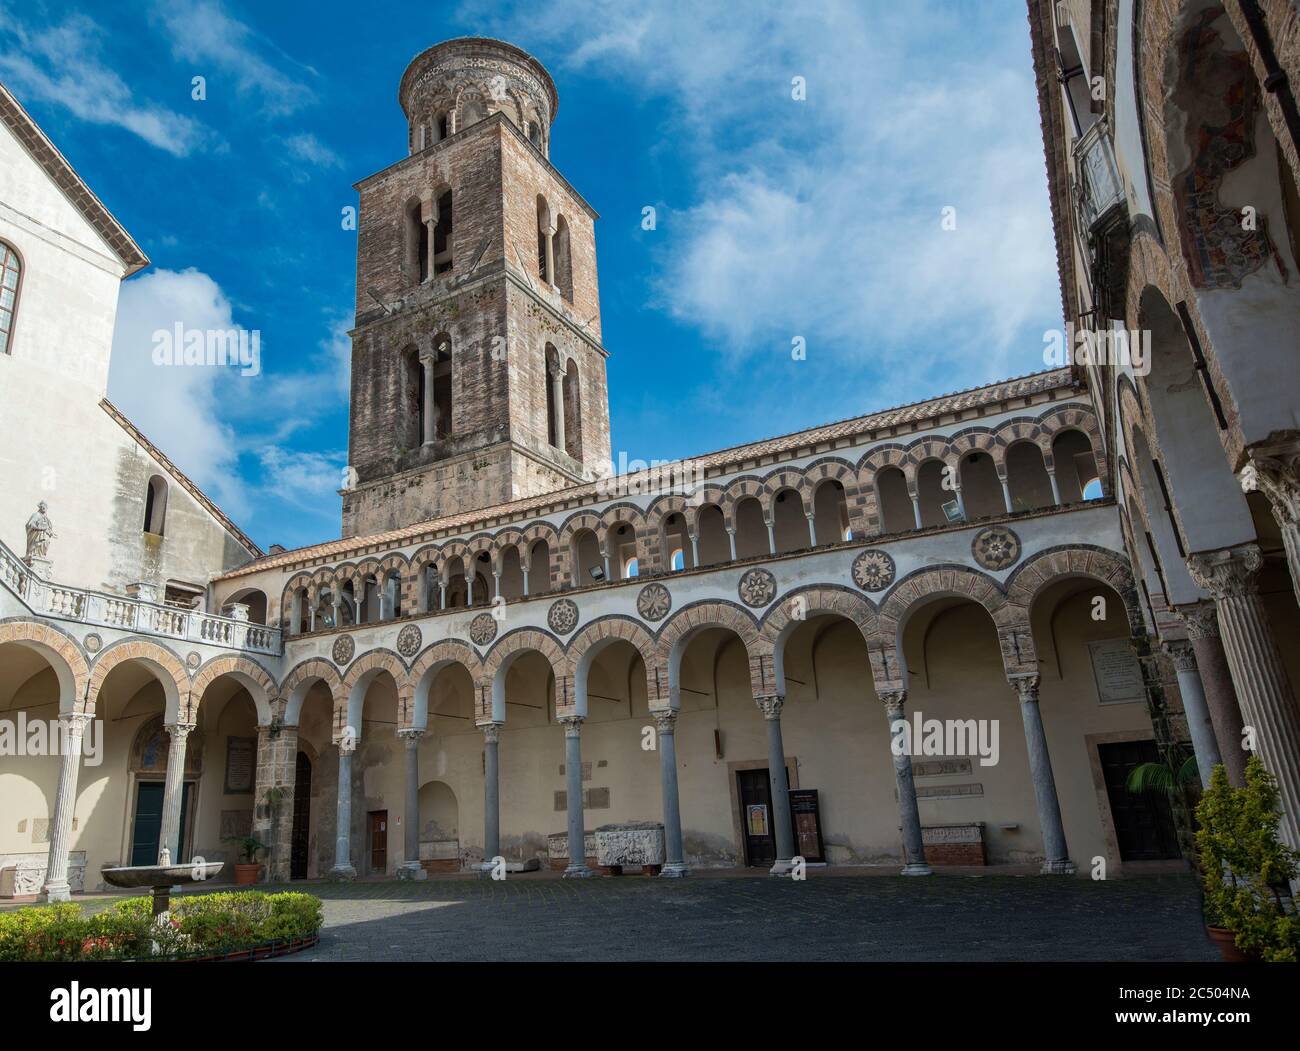 La Cattedrale di San Matteo (San Matteo) è la chiesa principale della città di Salerno e una delle principali attrazioni turistiche, Salerno, Campania, Italia Foto Stock